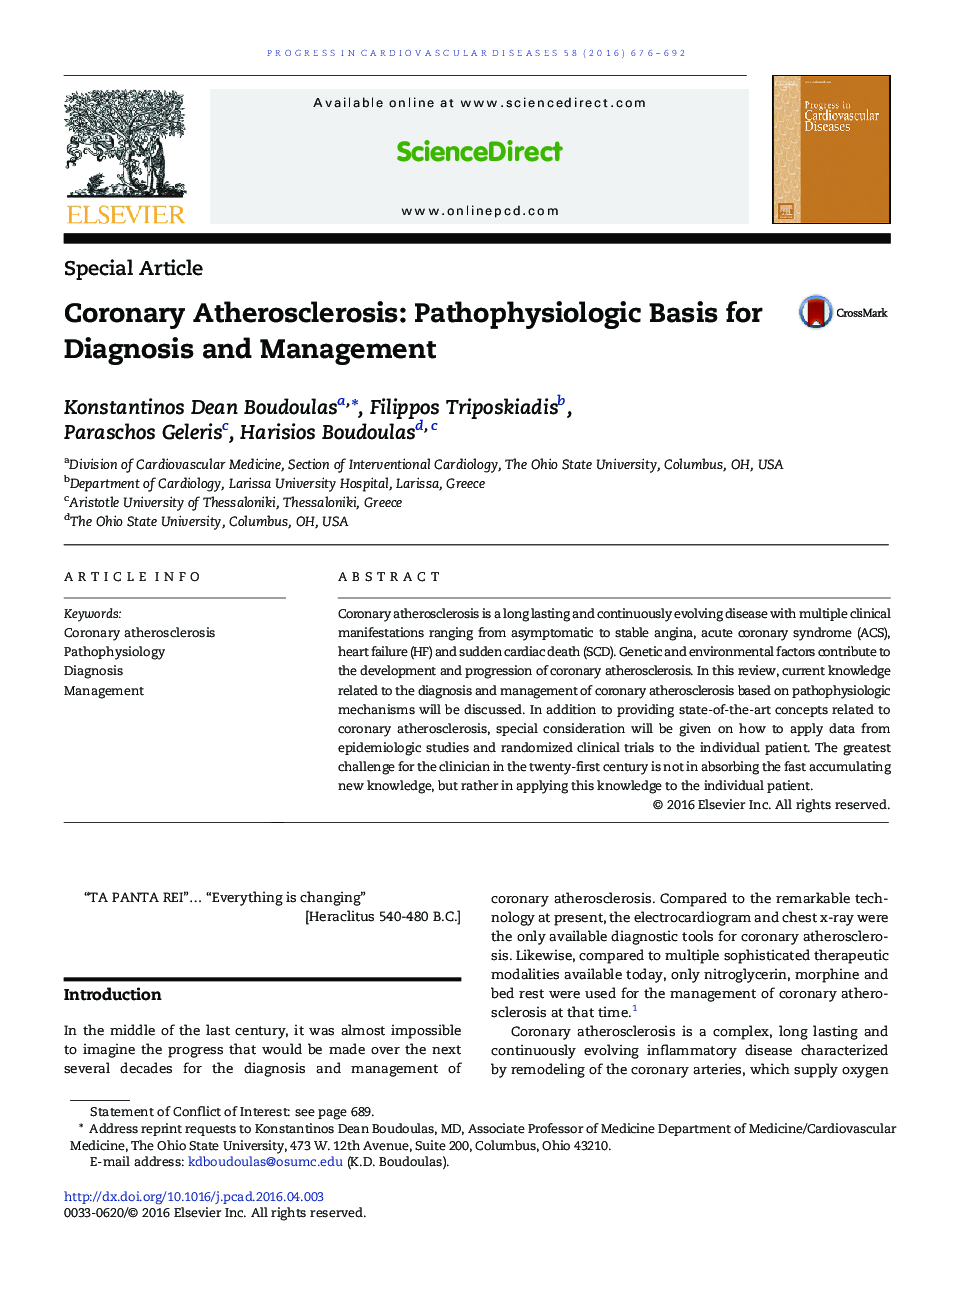 Coronary Atherosclerosis: Pathophysiologic Basis for Diagnosis and Management 